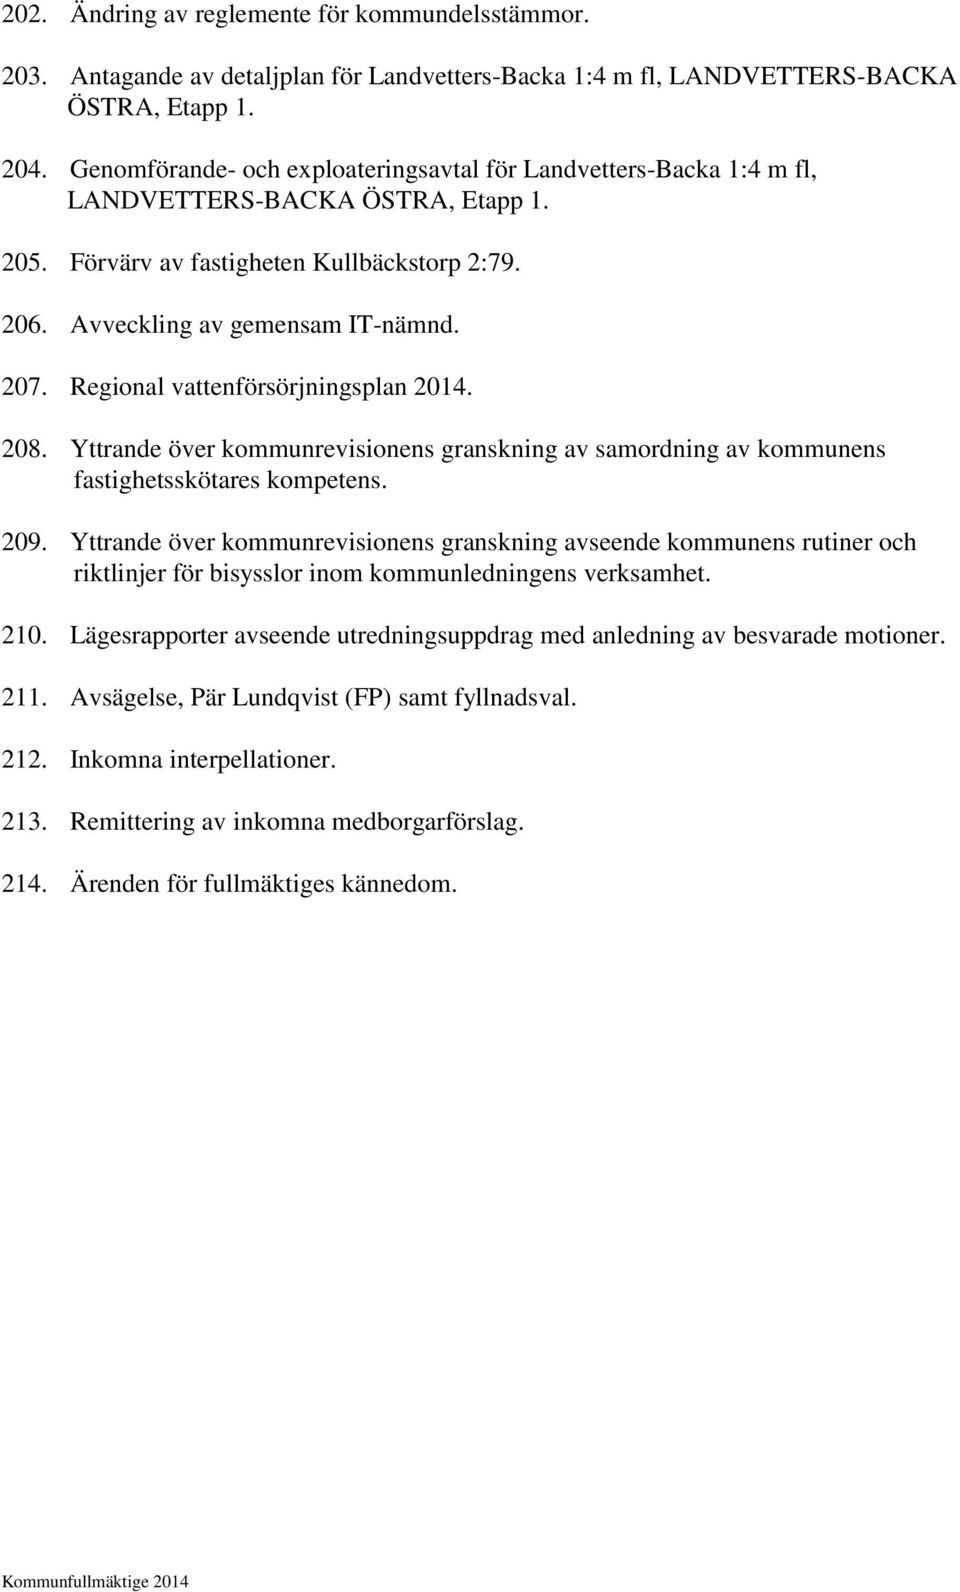 Regional vattenförsörjningsplan 2014. 208. Yttrande över kommunrevisionens granskning av samordning av kommunens fastighetsskötares kompetens. 209.